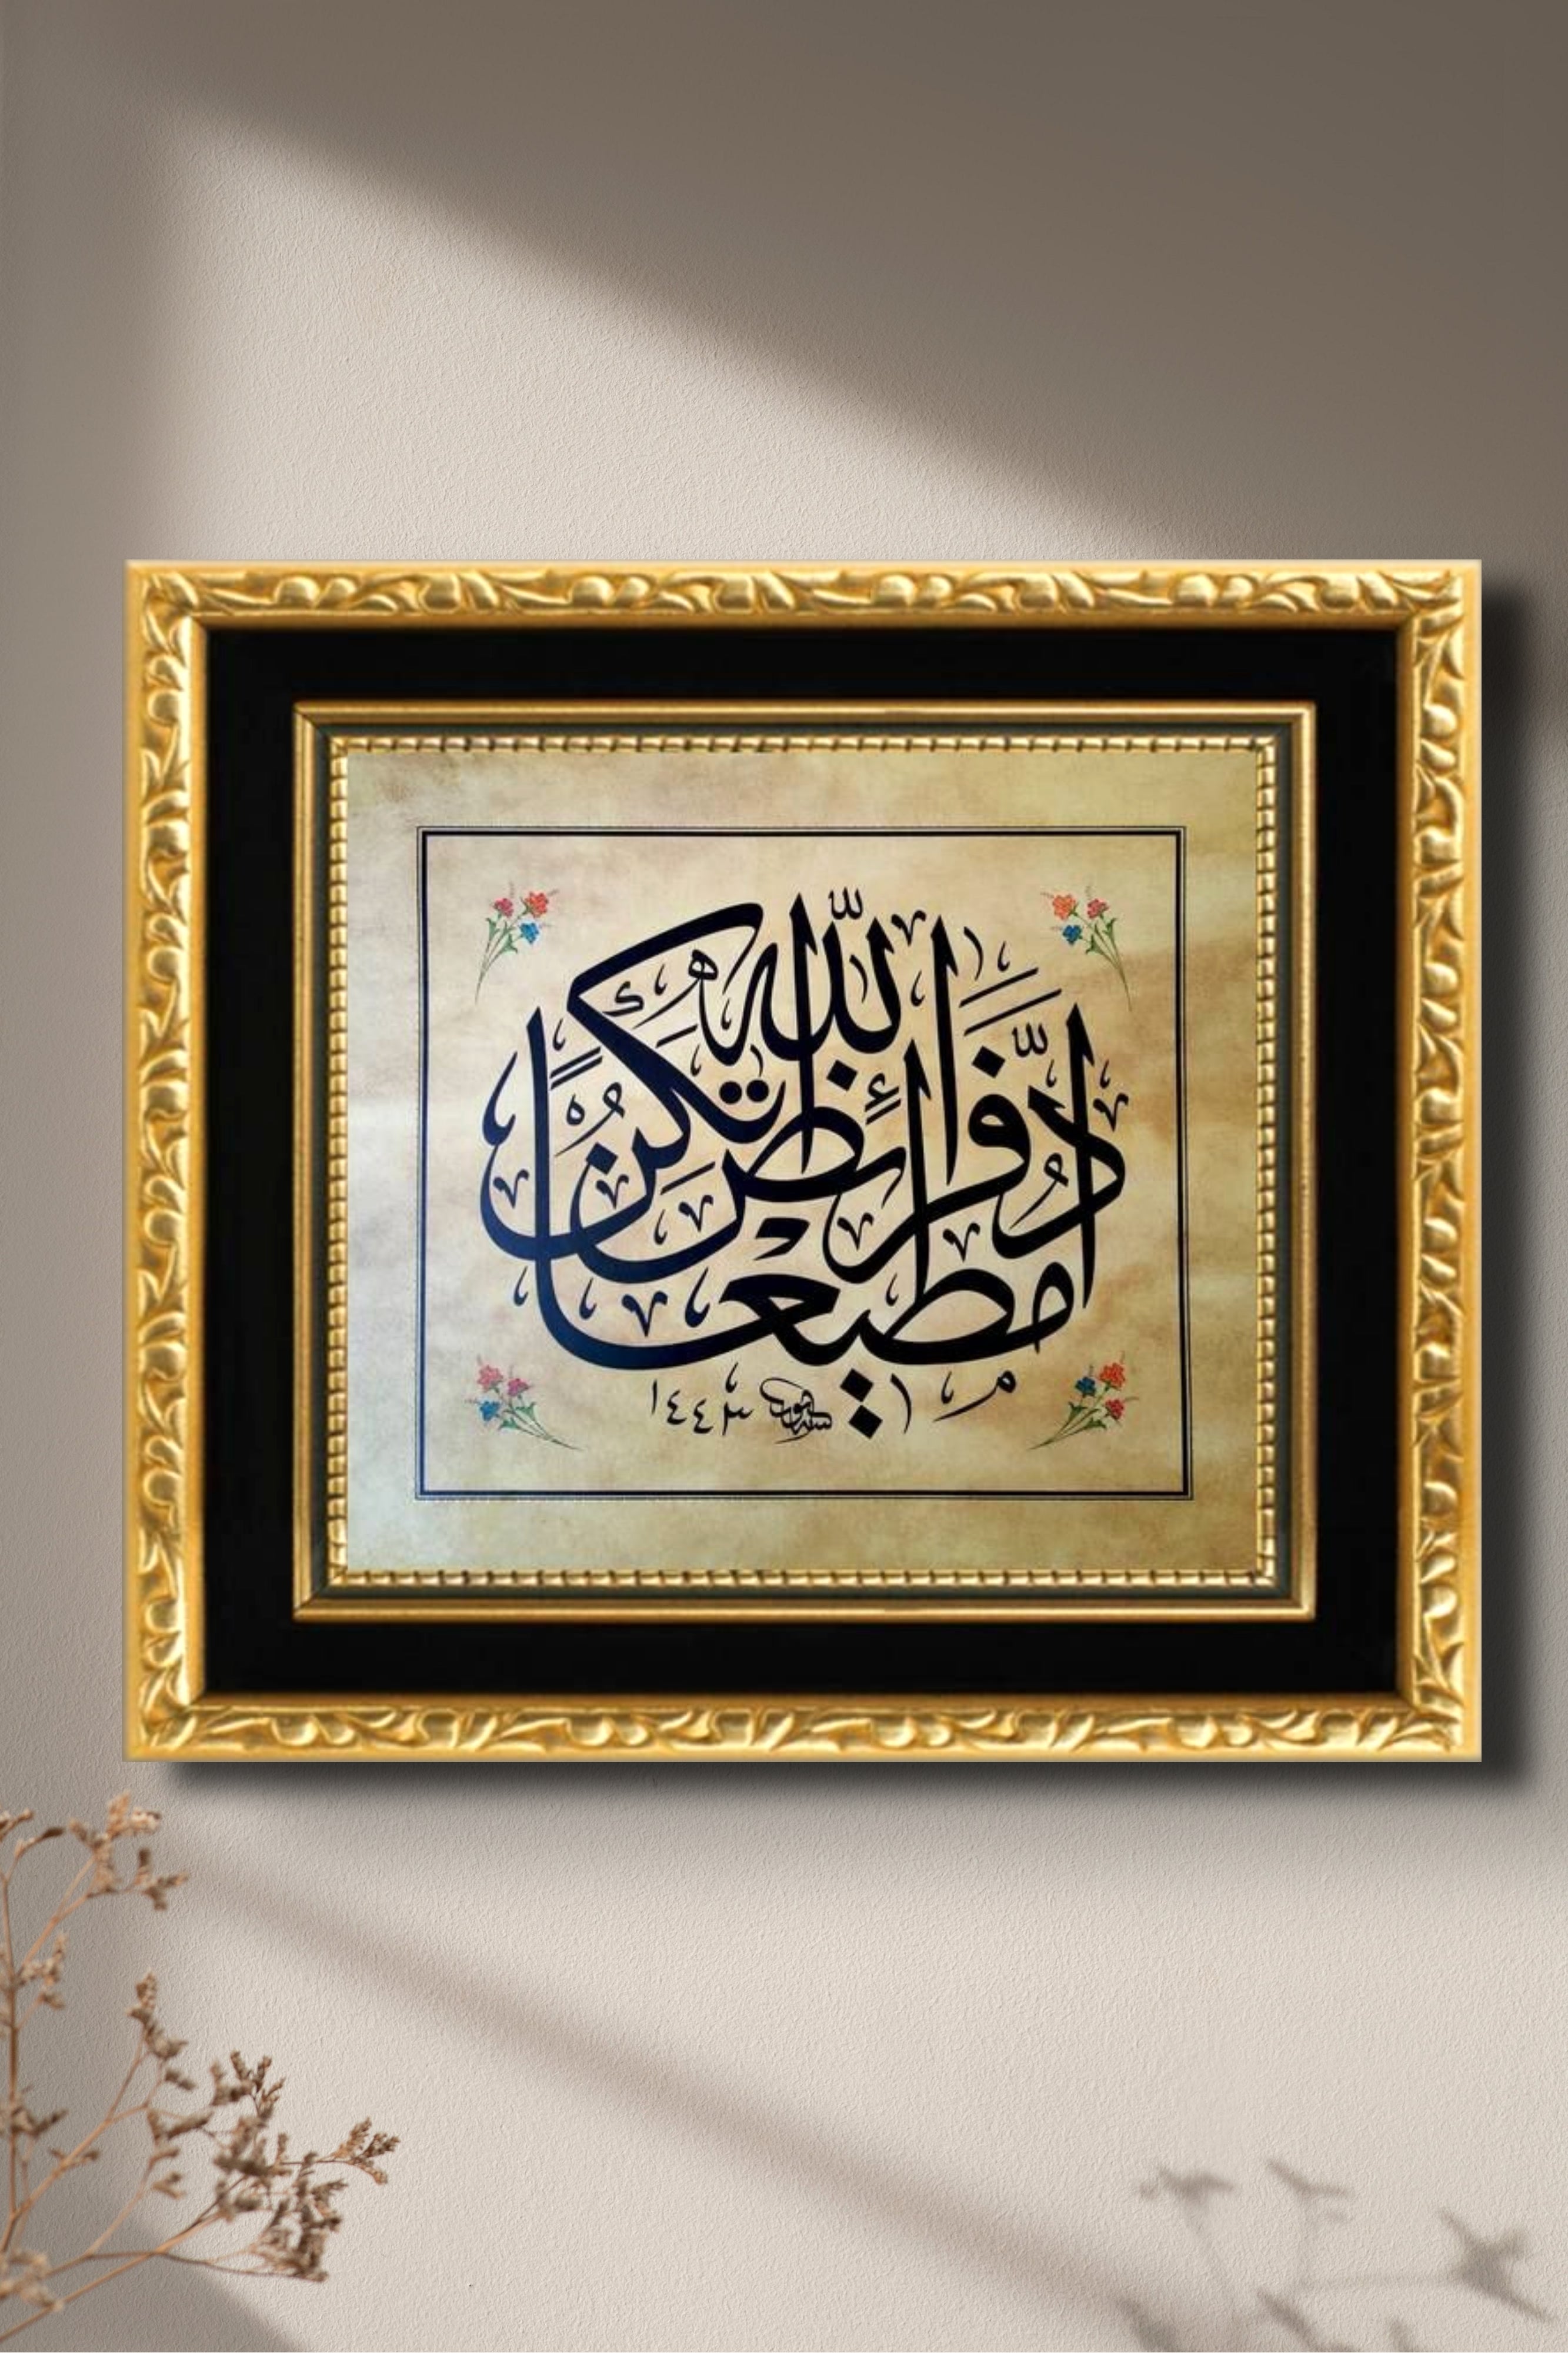 Gold Frame Hadith-i Sharif Calligraphy Islamic Art - Islamic Art UK